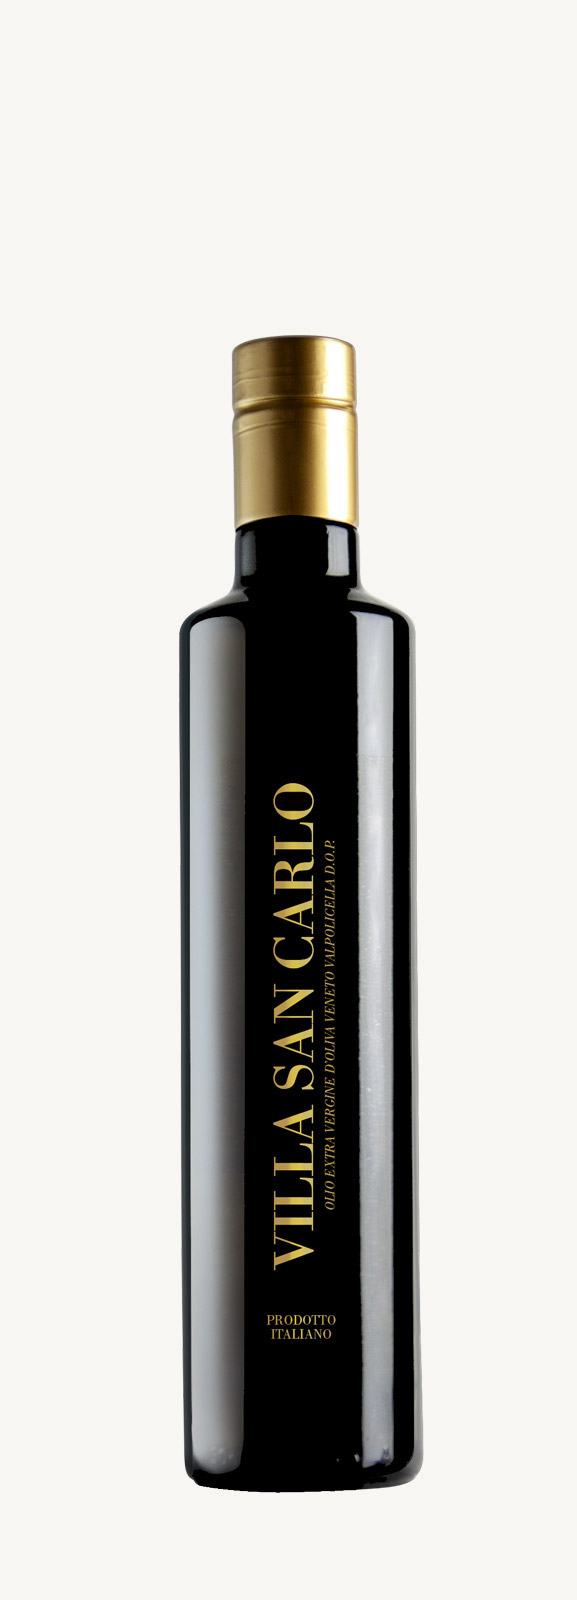 Bottiglia di olio d'oliva della Valpolicella